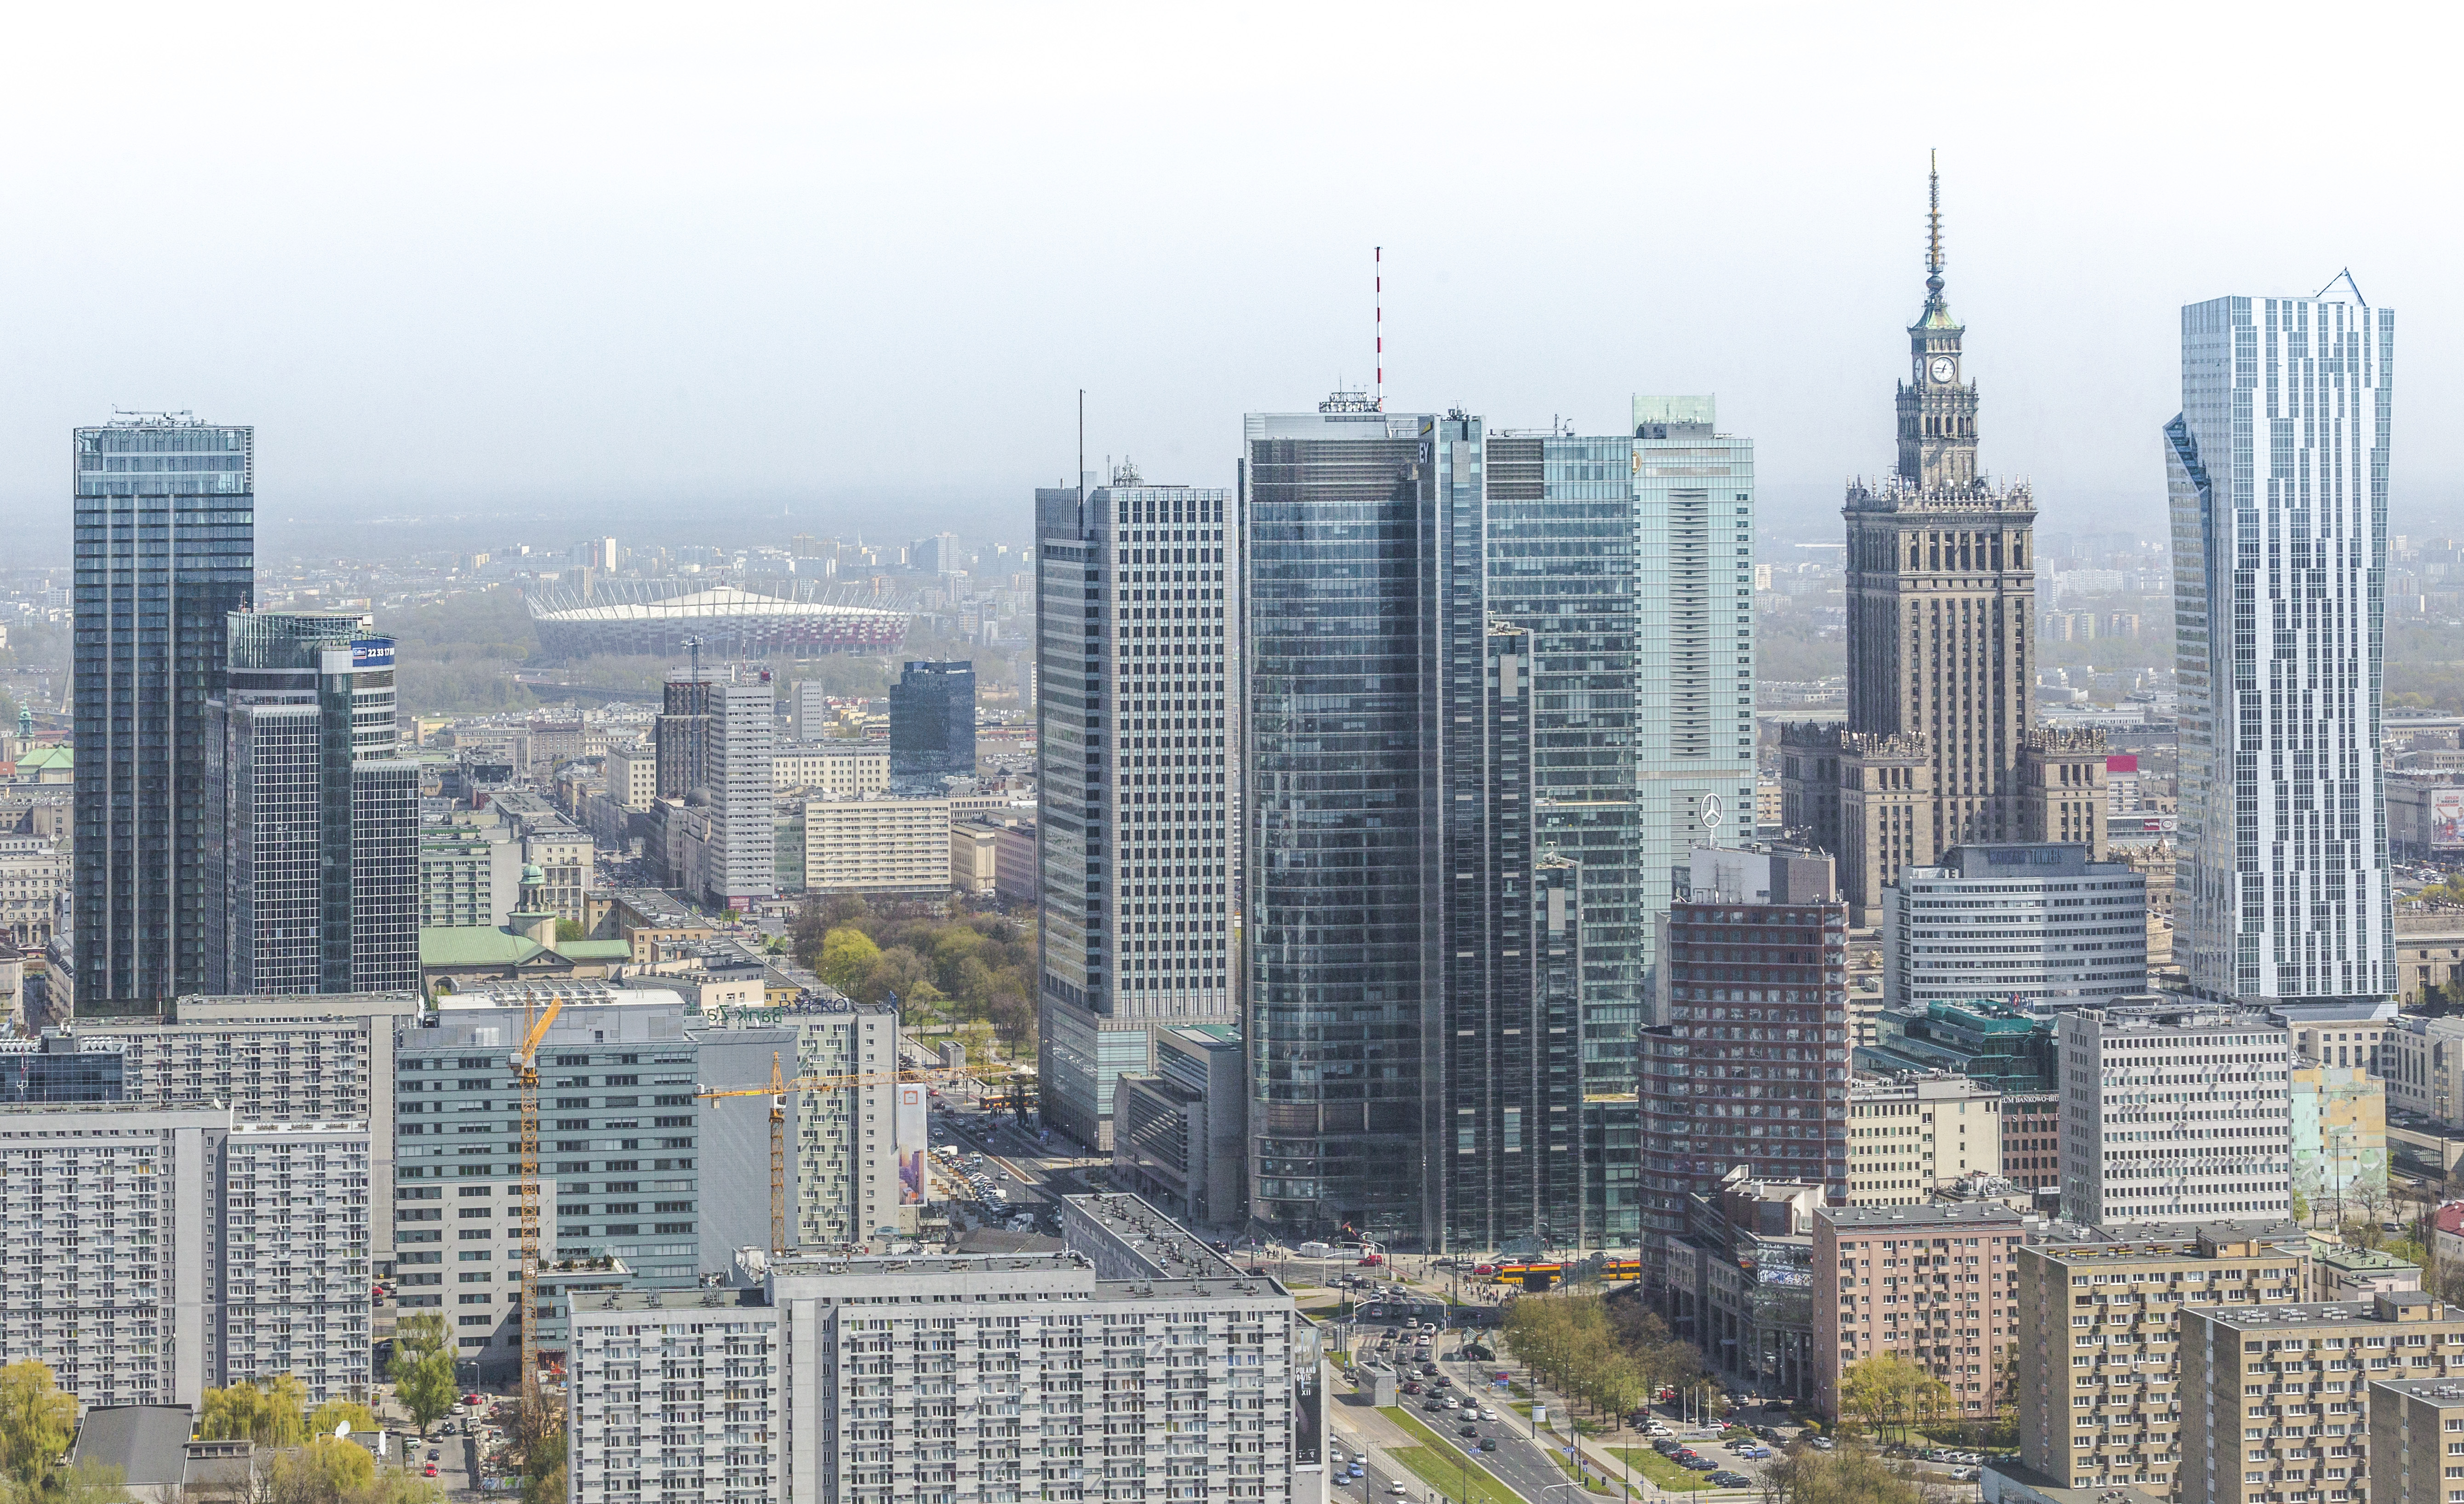 Najdroższe lokalizacje biurowe świata Biura Panorama Warszawy 2015 Jankarol.com CBRE